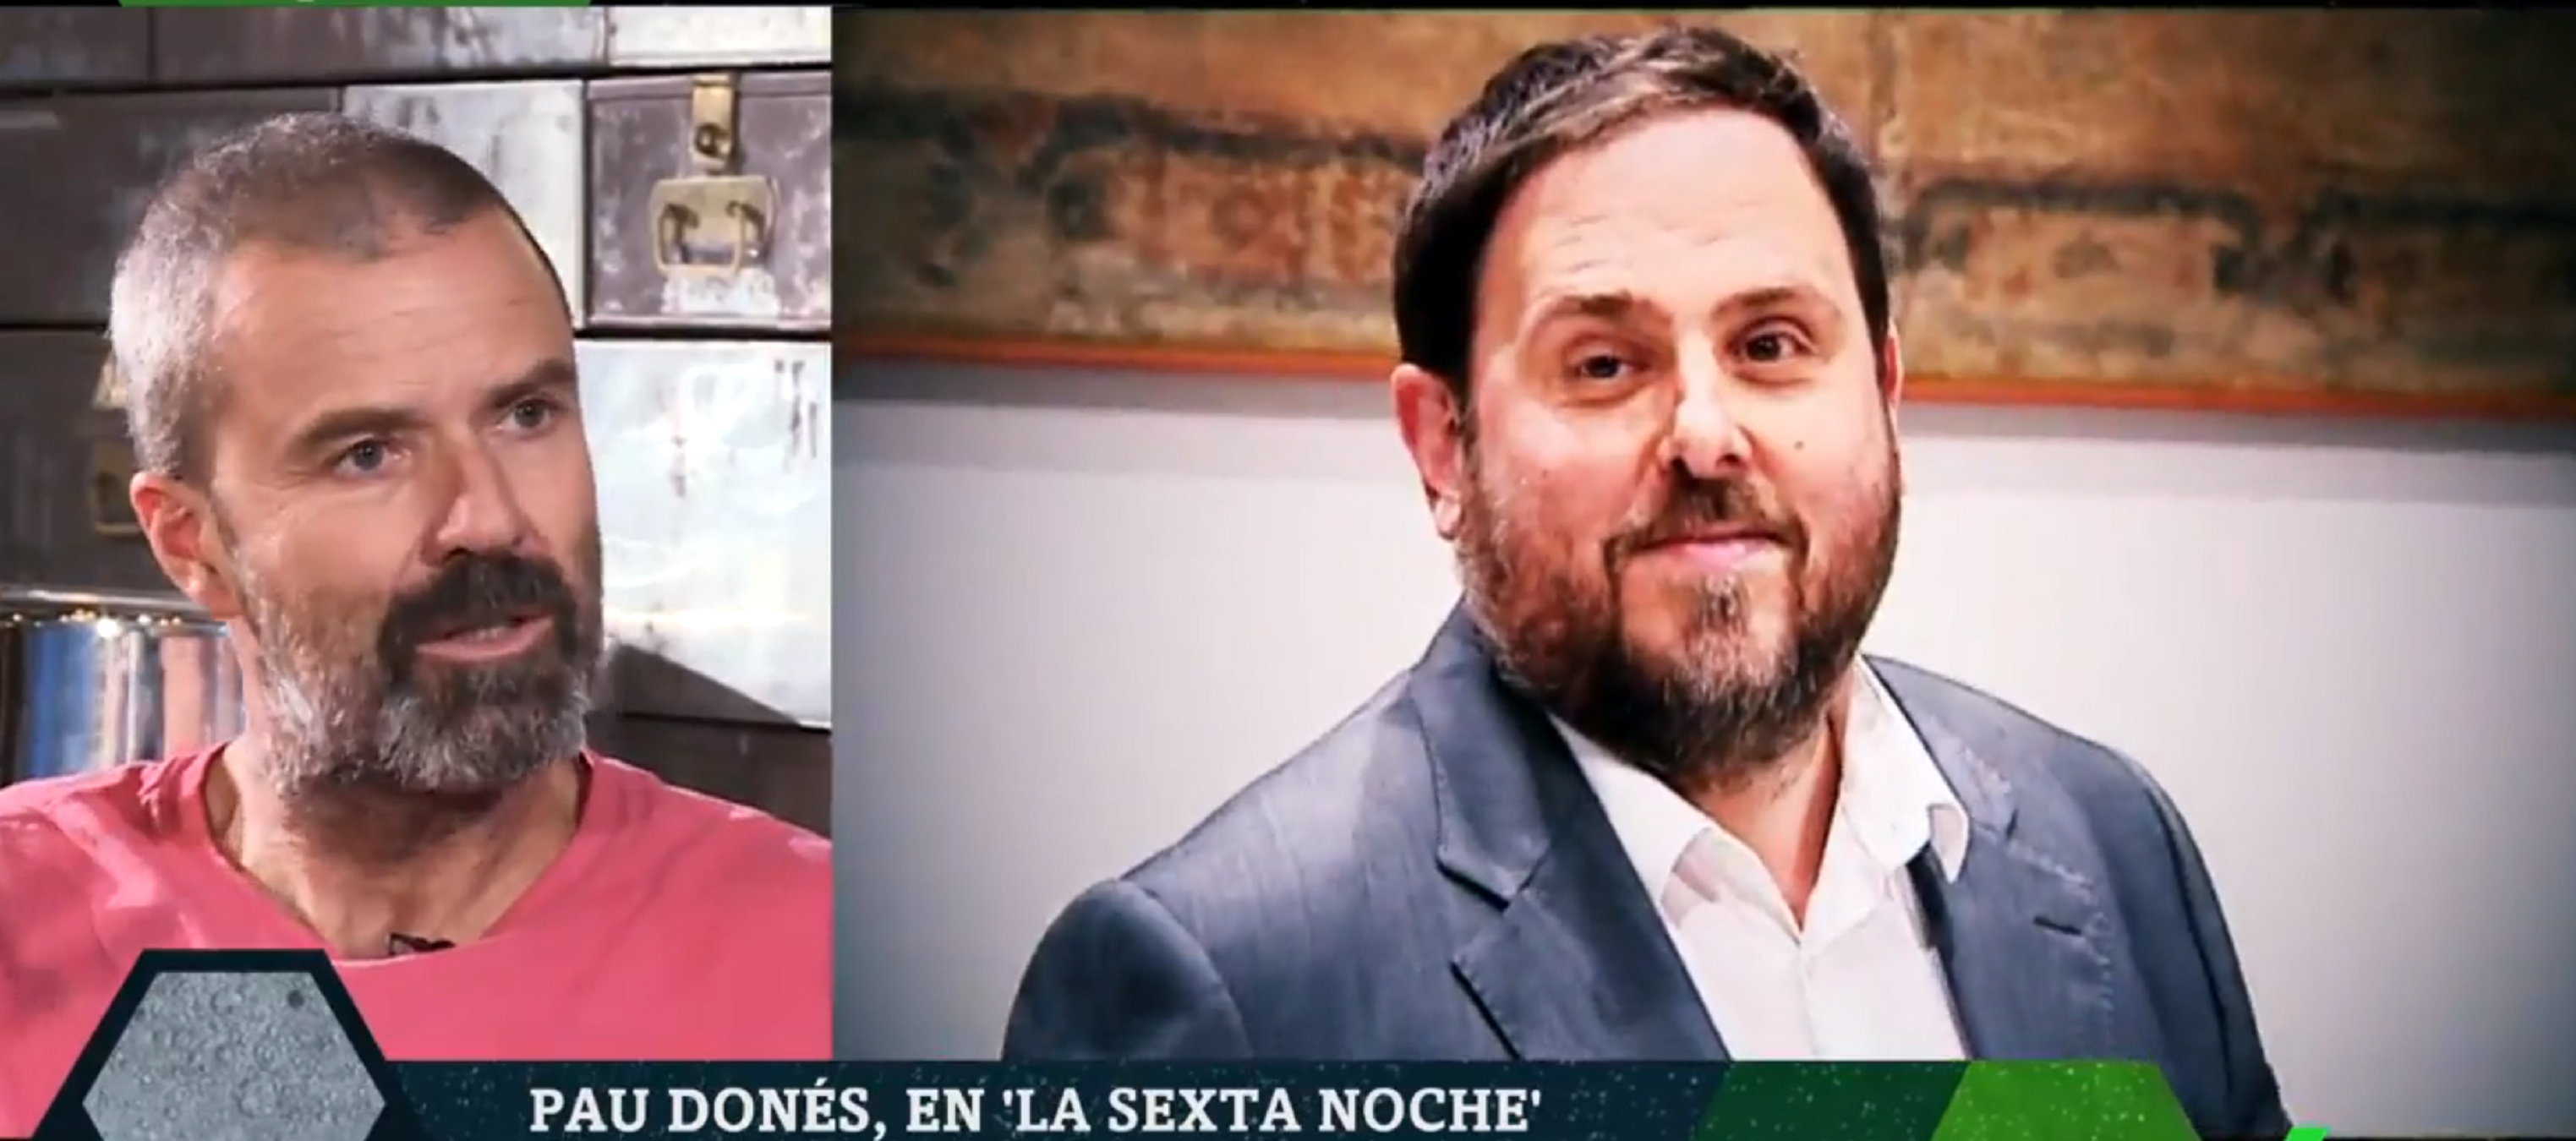 Pau Donés, indignado: "No entiendo que haya presos políticos como Junqueras"